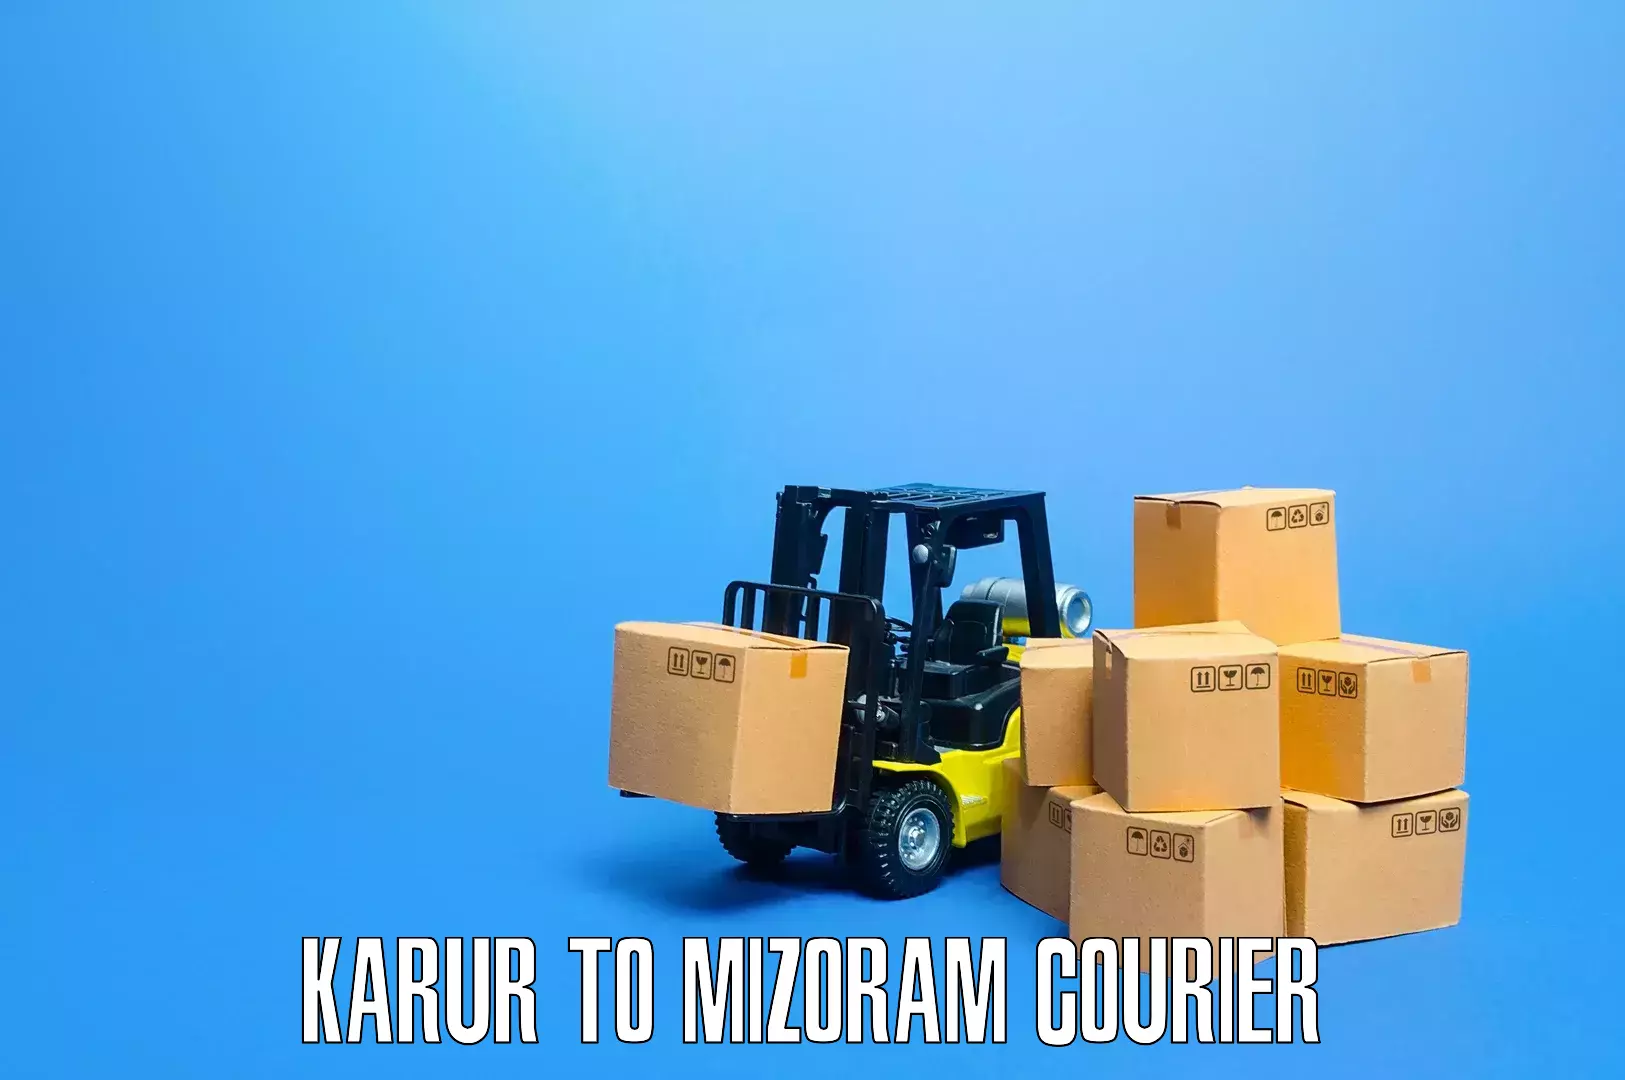 Residential moving experts Karur to Mizoram